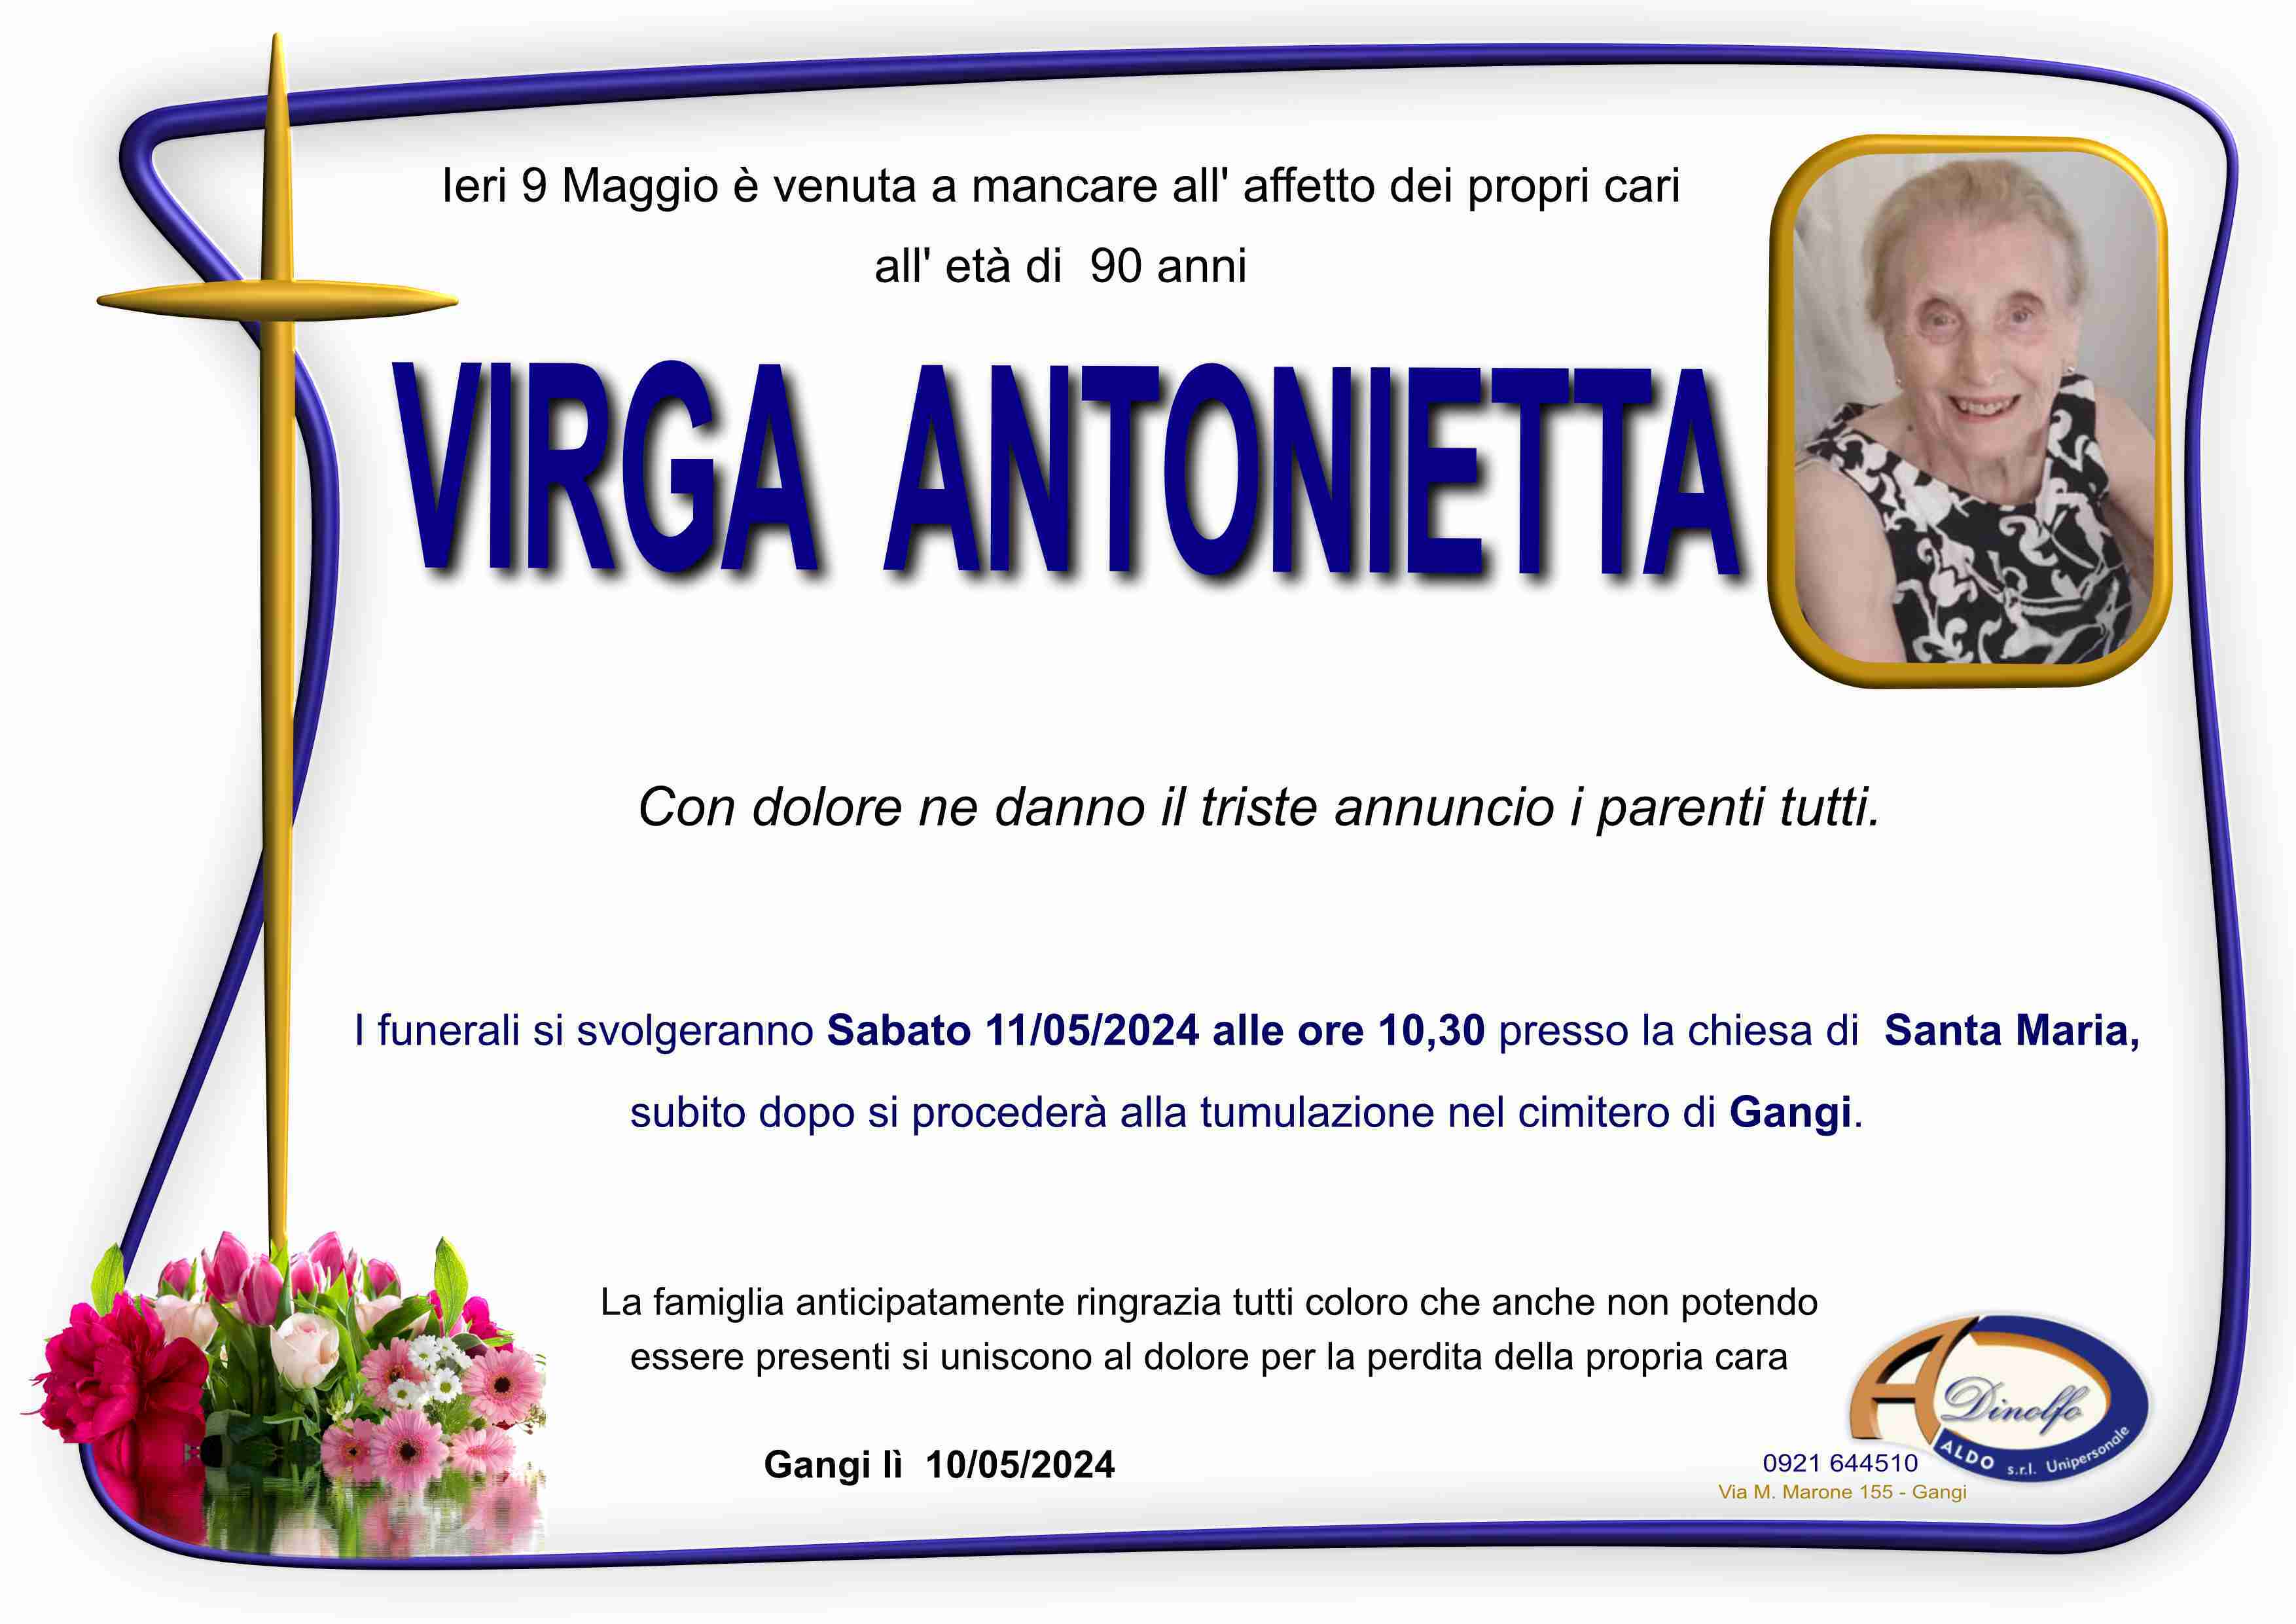 Antonietta Virga